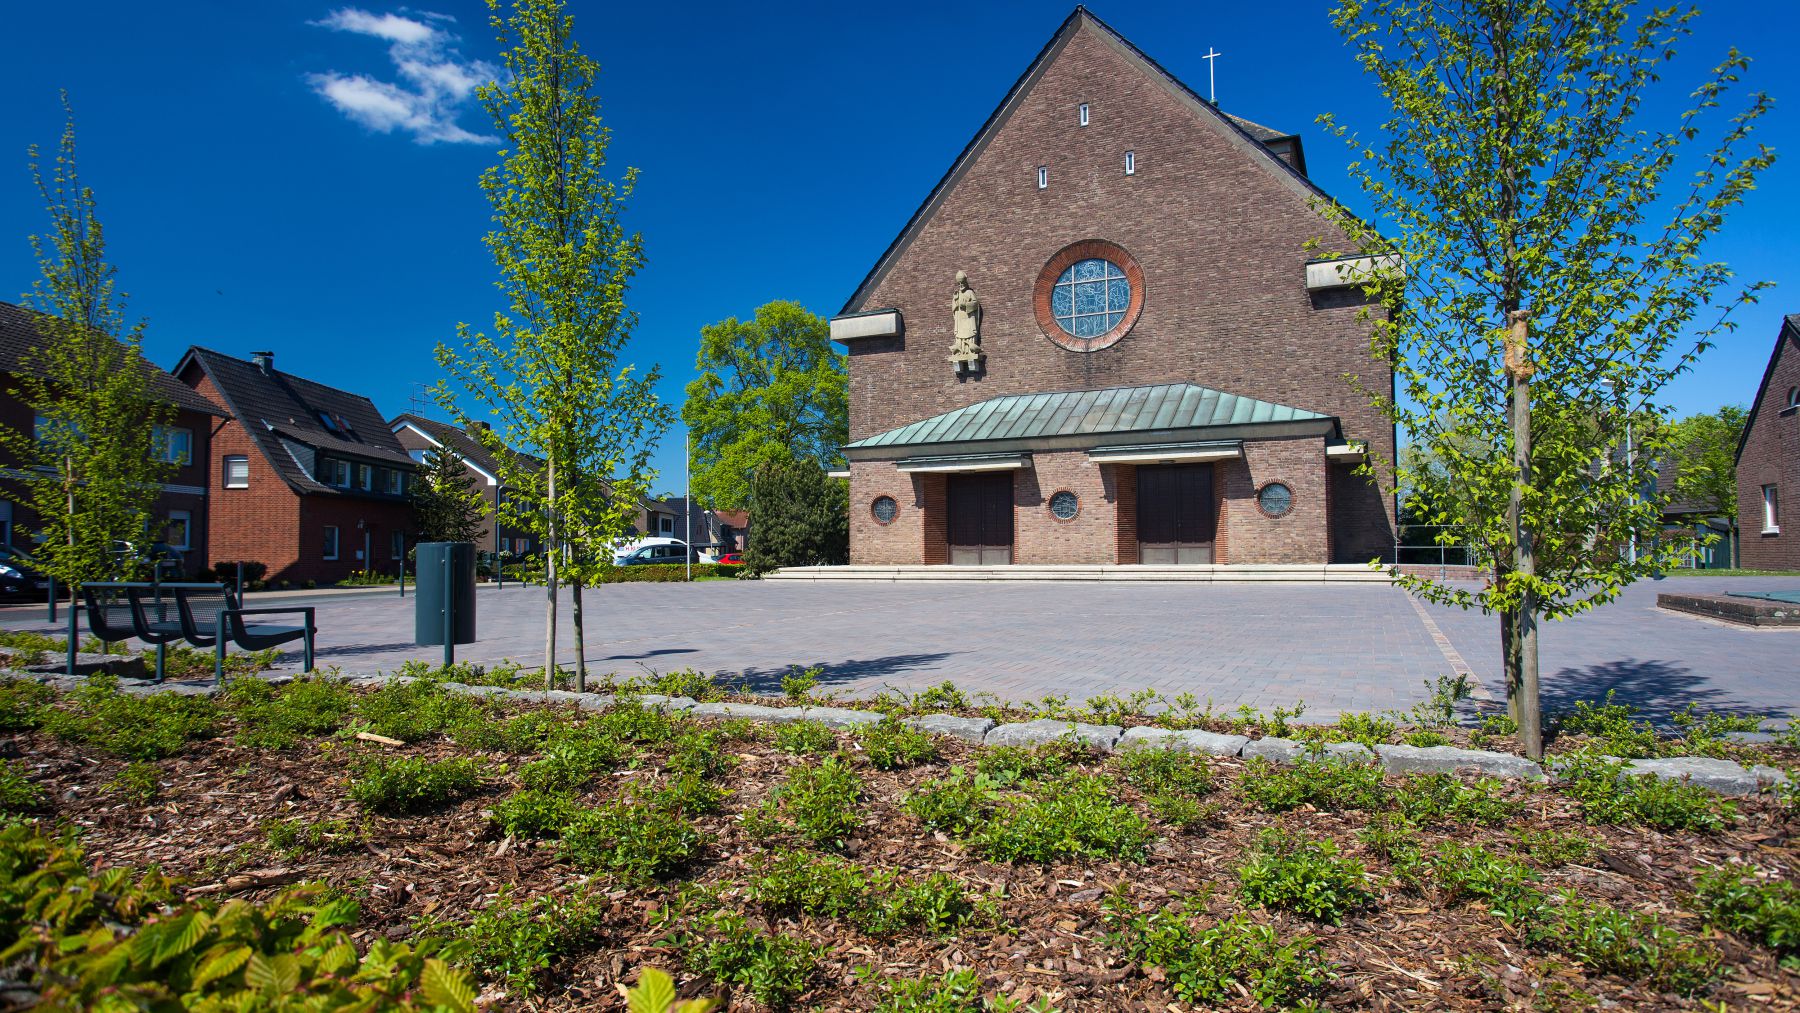 4.201 Pflasterungen und Bepflanzung rund um die St. Ludgeruskirche in Spork